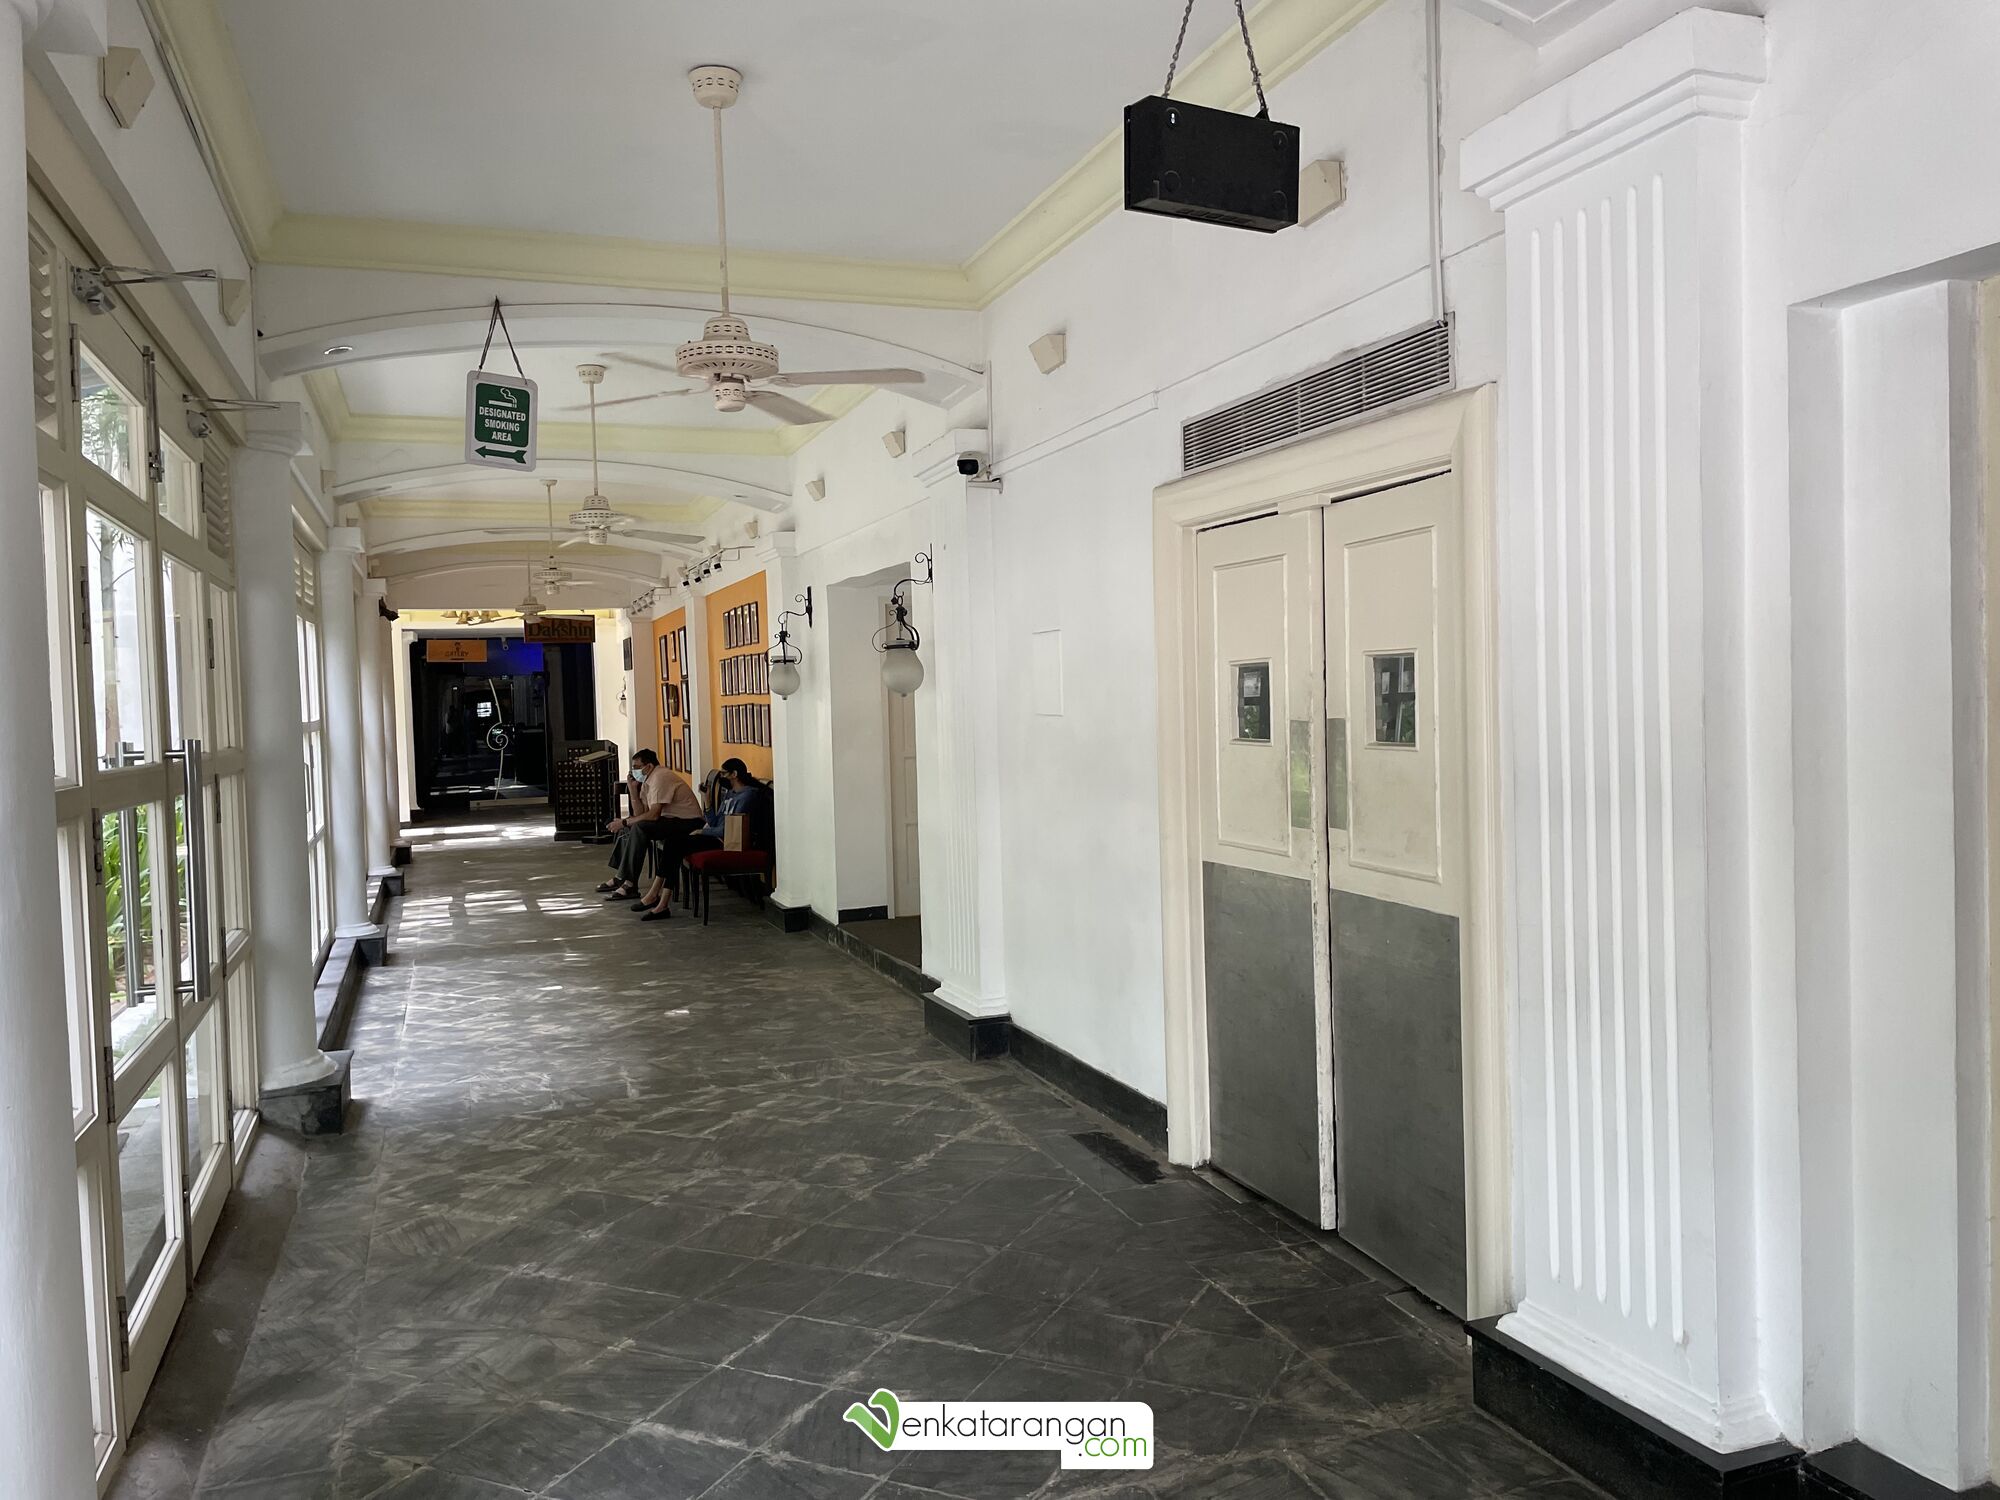 Corridor leading to Dakshin restaurant